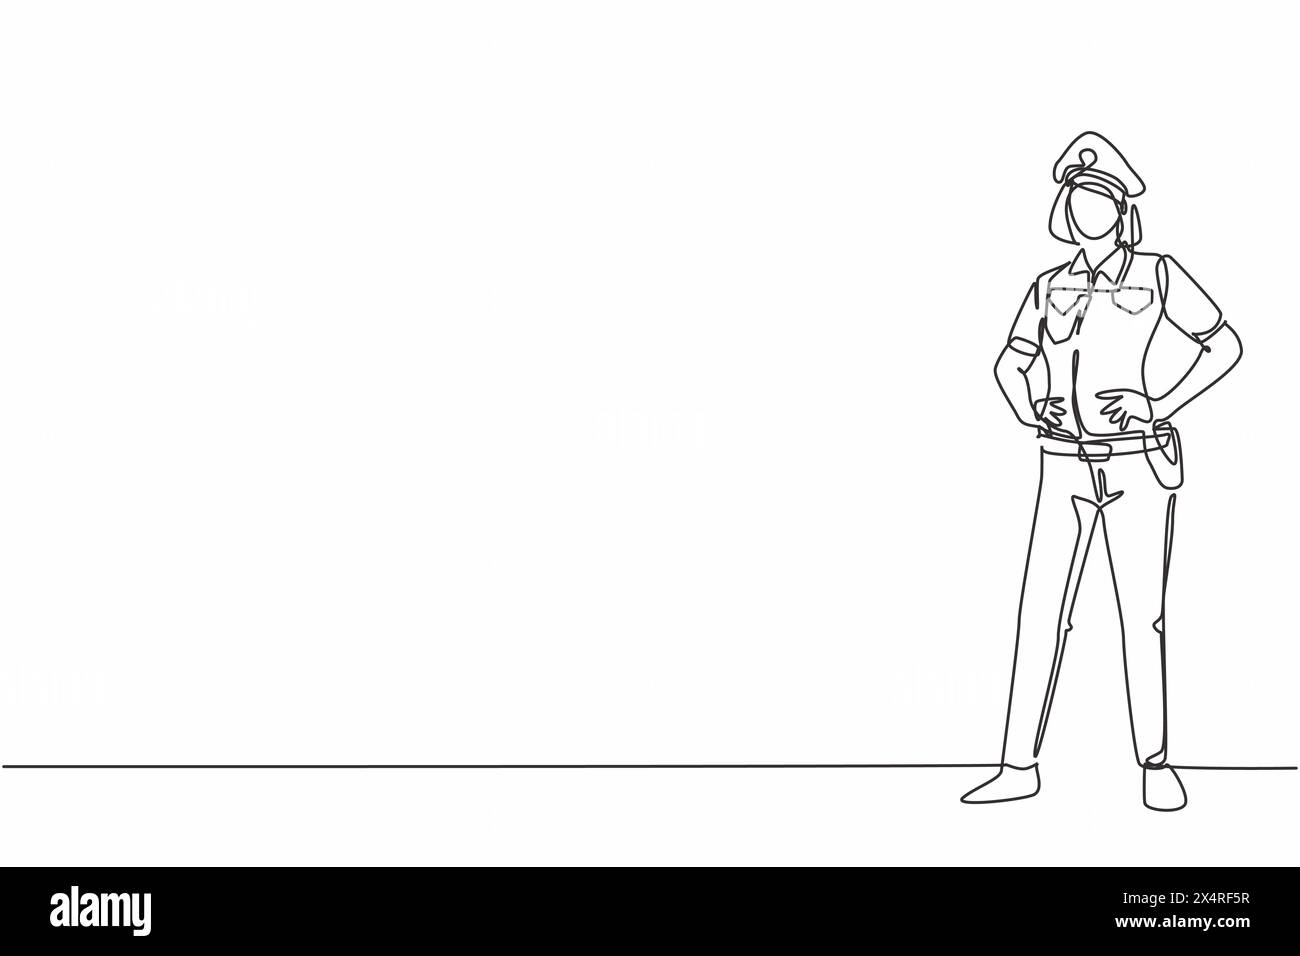 Durchgehende einzeilige Zeichnung einer jungen Schönheitspolizeiin auf Uniform stehend mit Händen an der Hüfte. Professionelles Berufsbild minimalistisches Konzept. Einfach Stock Vektor